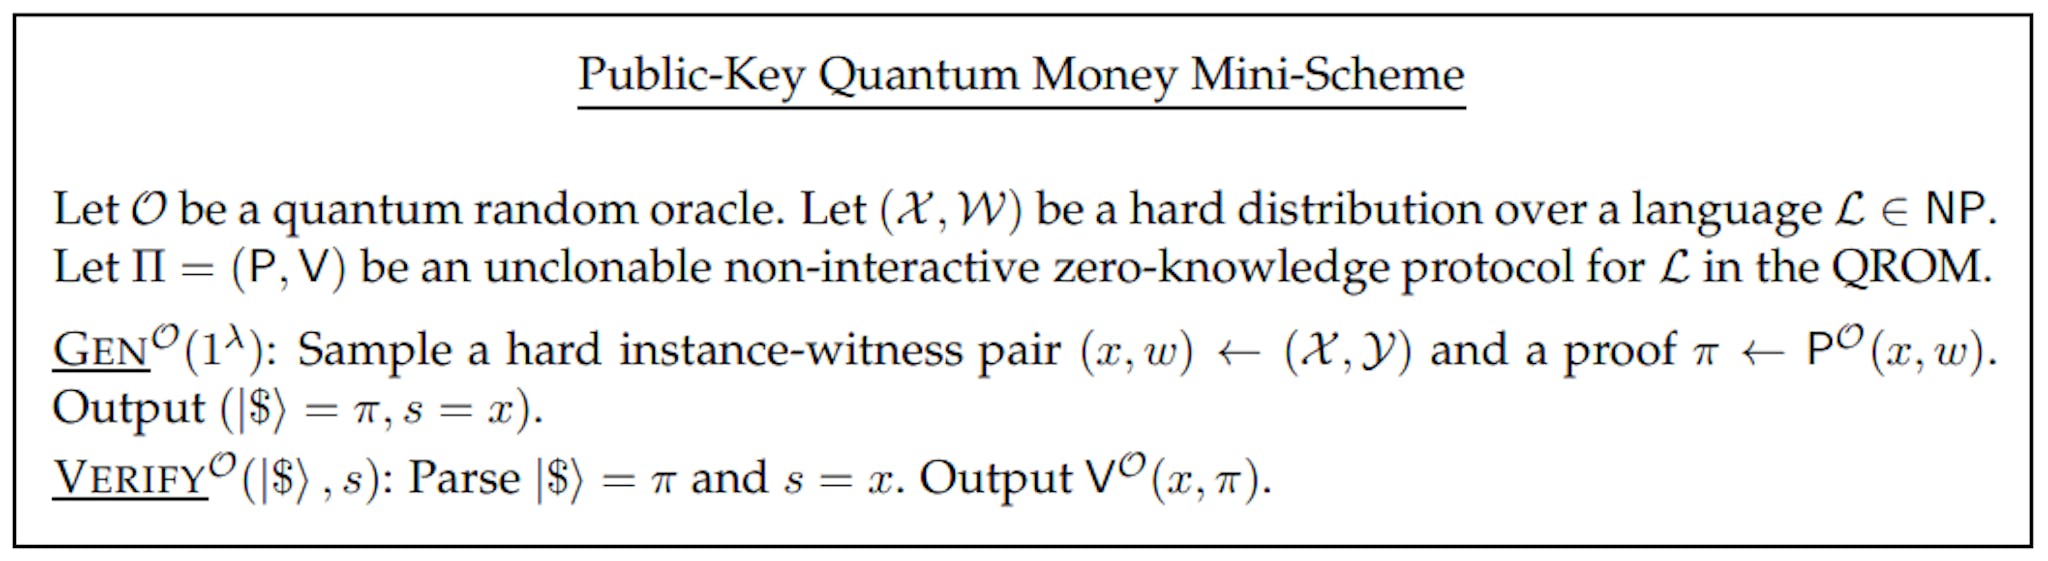 Hình 4: Lược đồ nhỏ về tiền lượng tử khóa công khai từ Giao thức lượng tử không tương tác không thể nhân bản